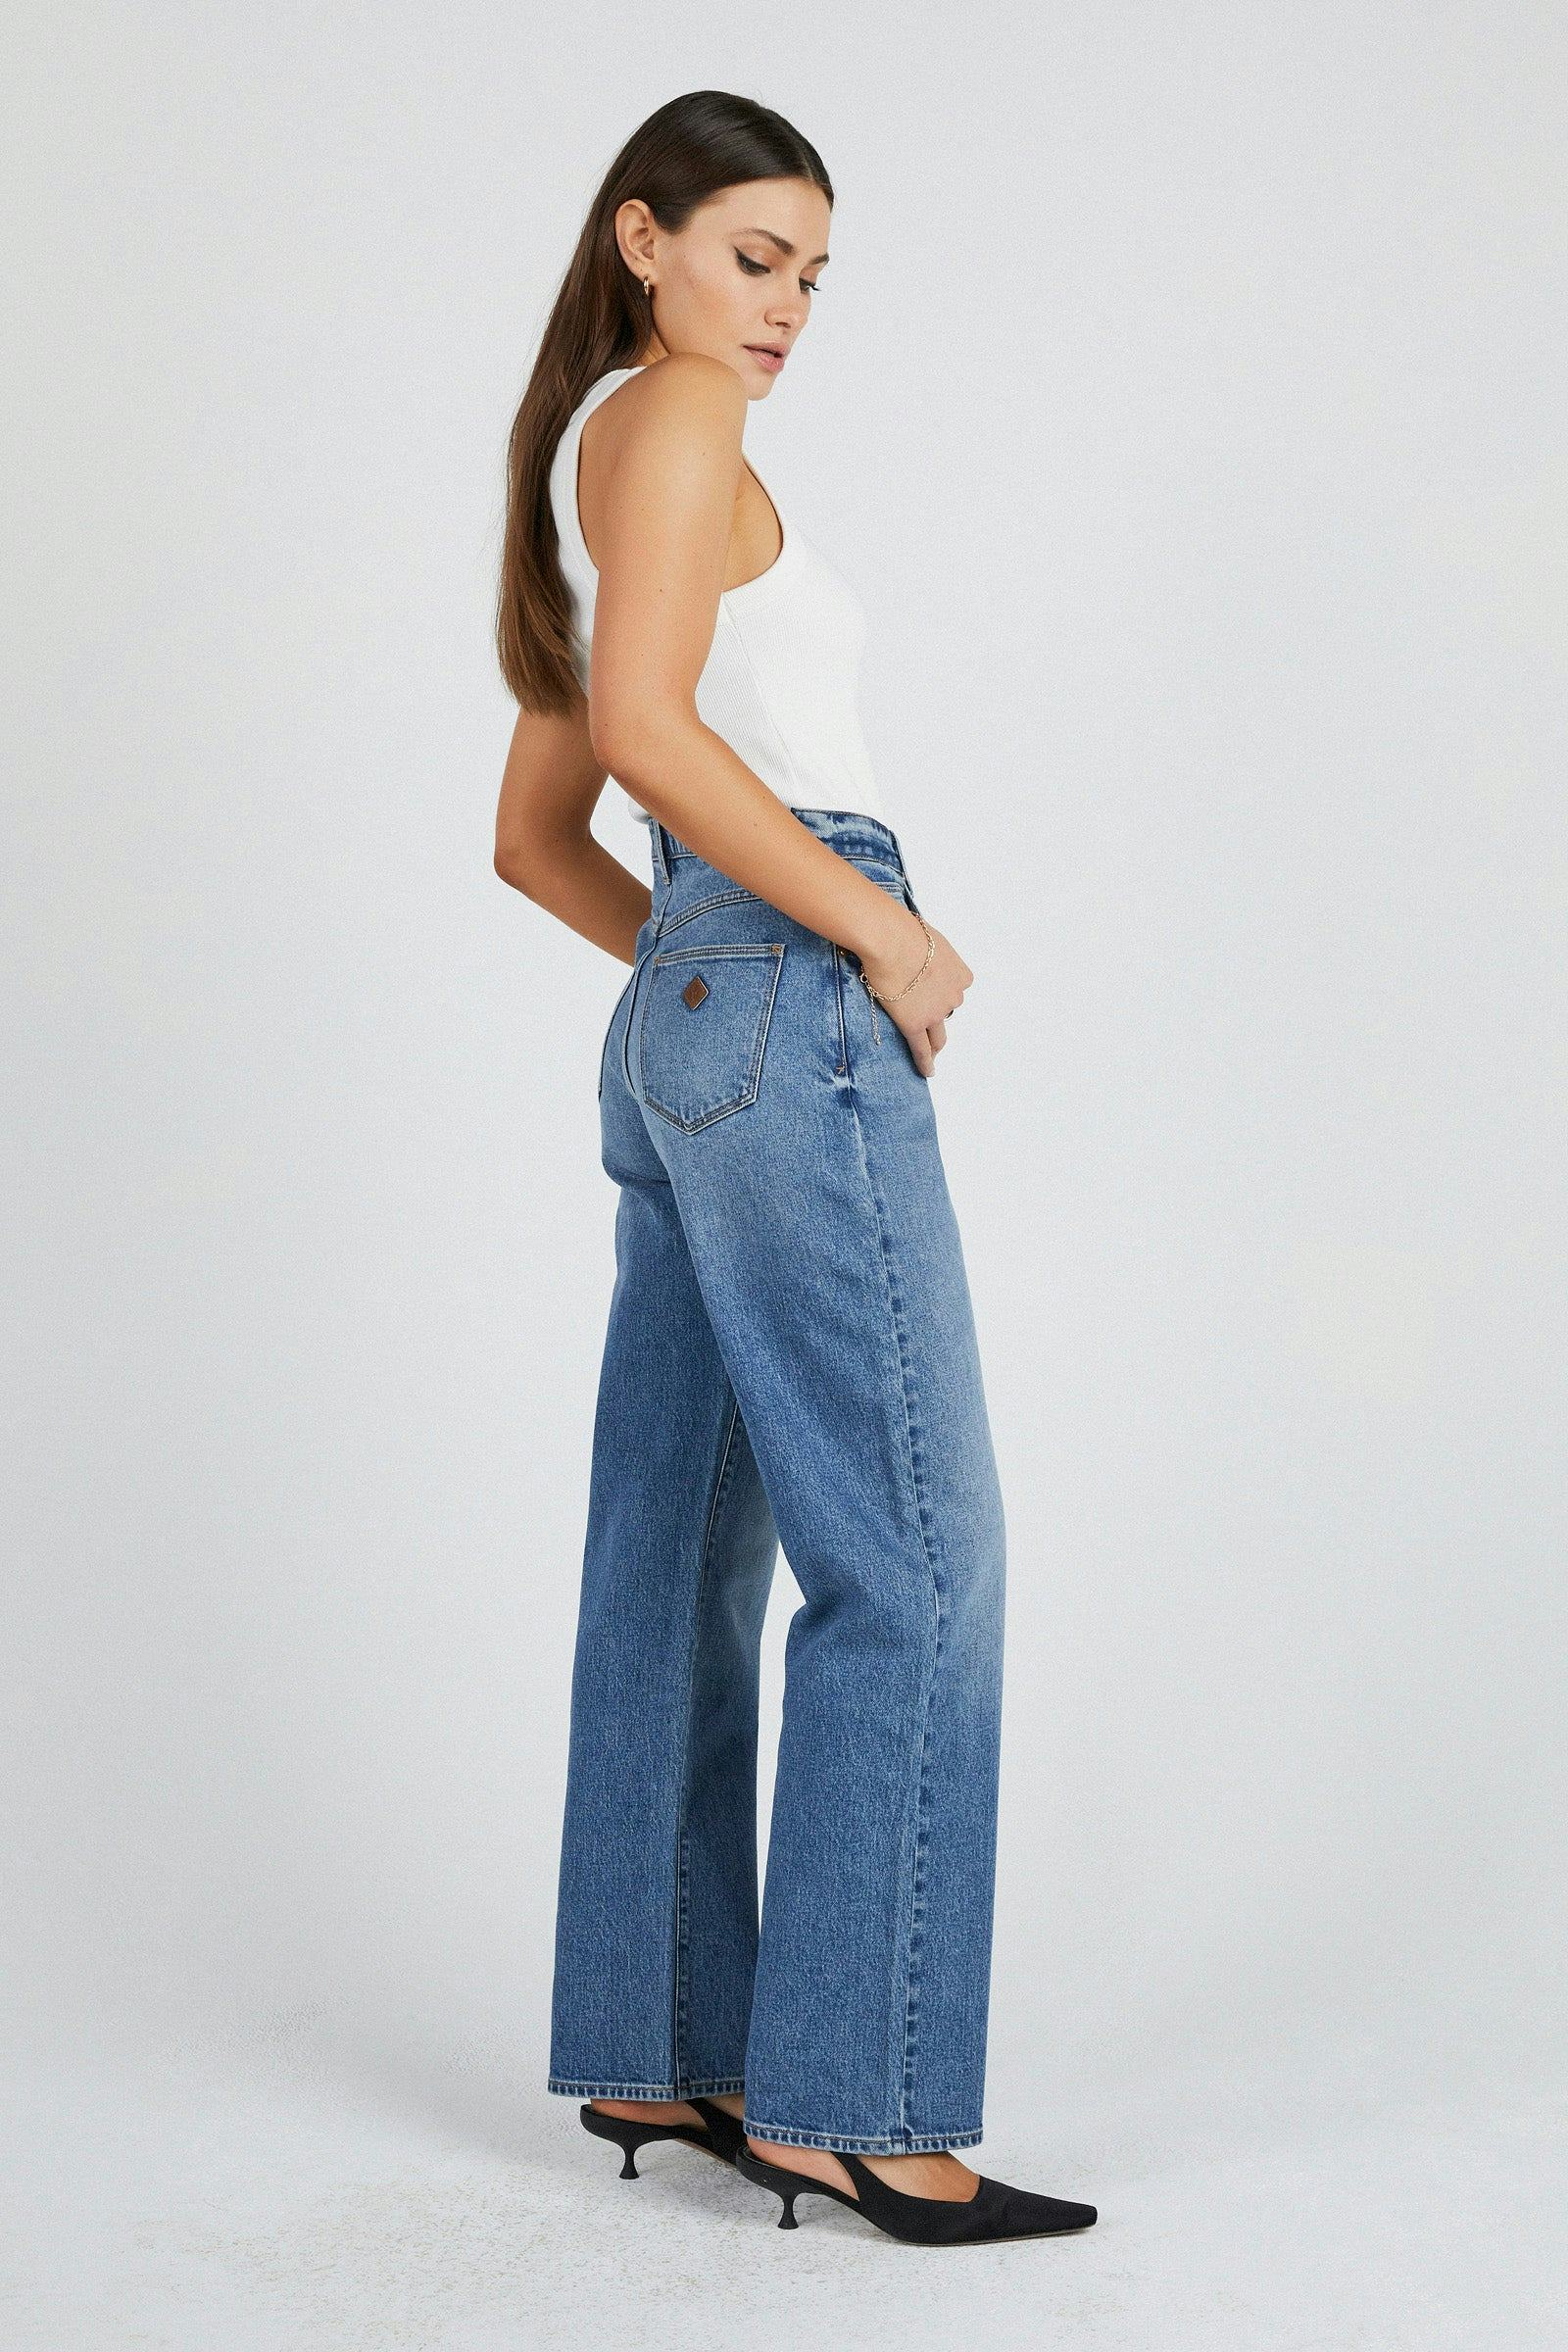 Buy Carrie Jean Monifa Online | Abrand Jeans